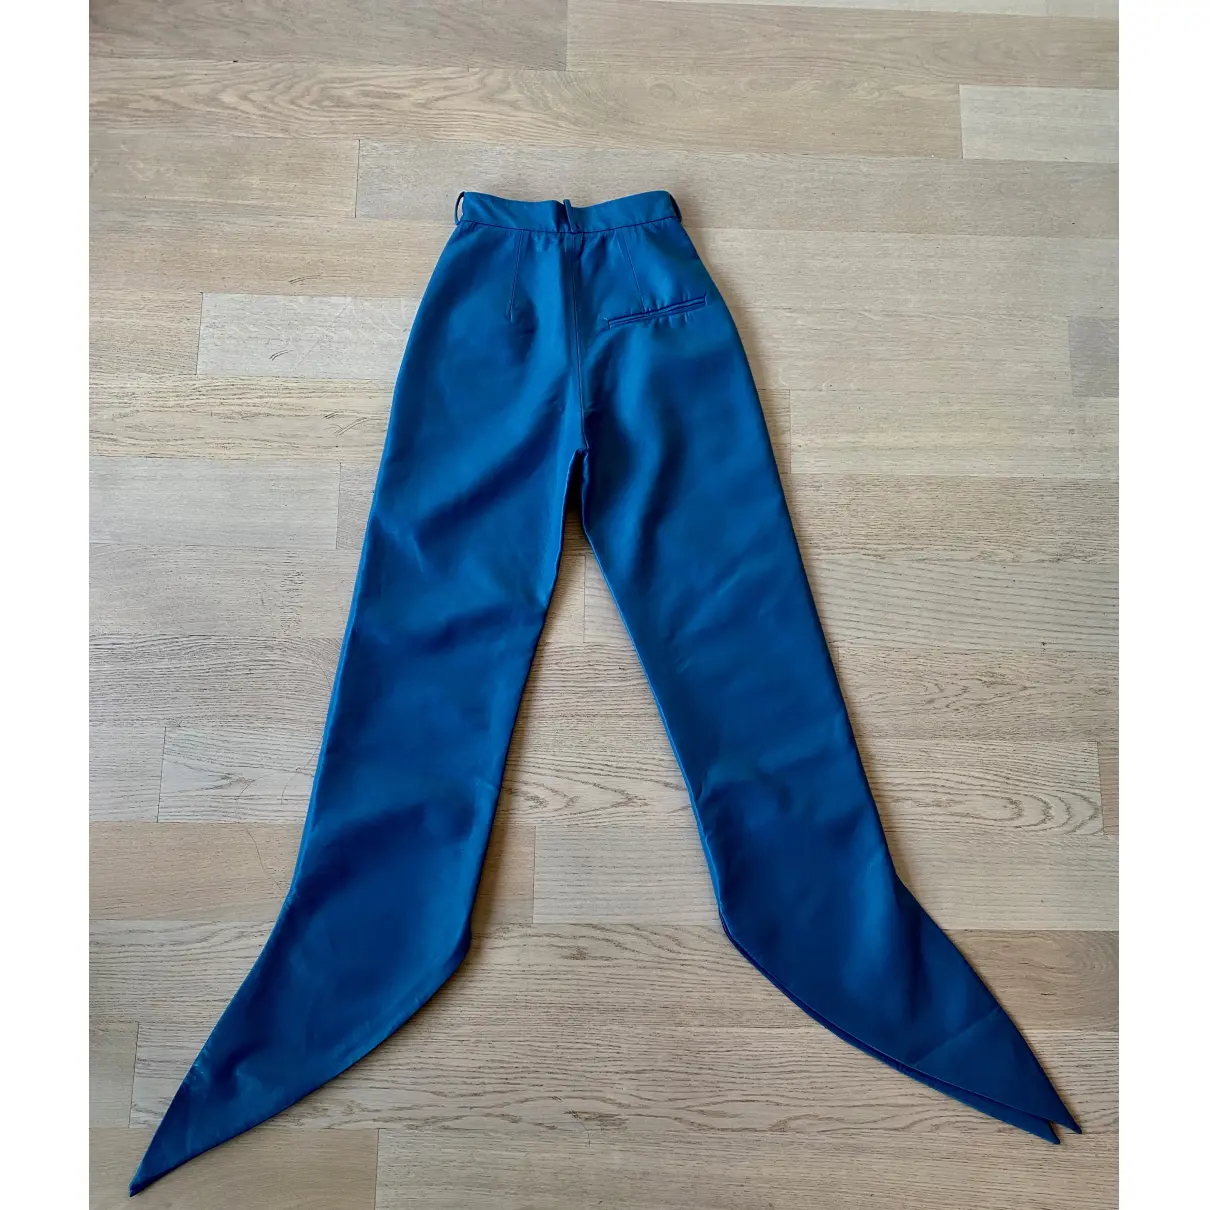 Buy Matériel Trousers online